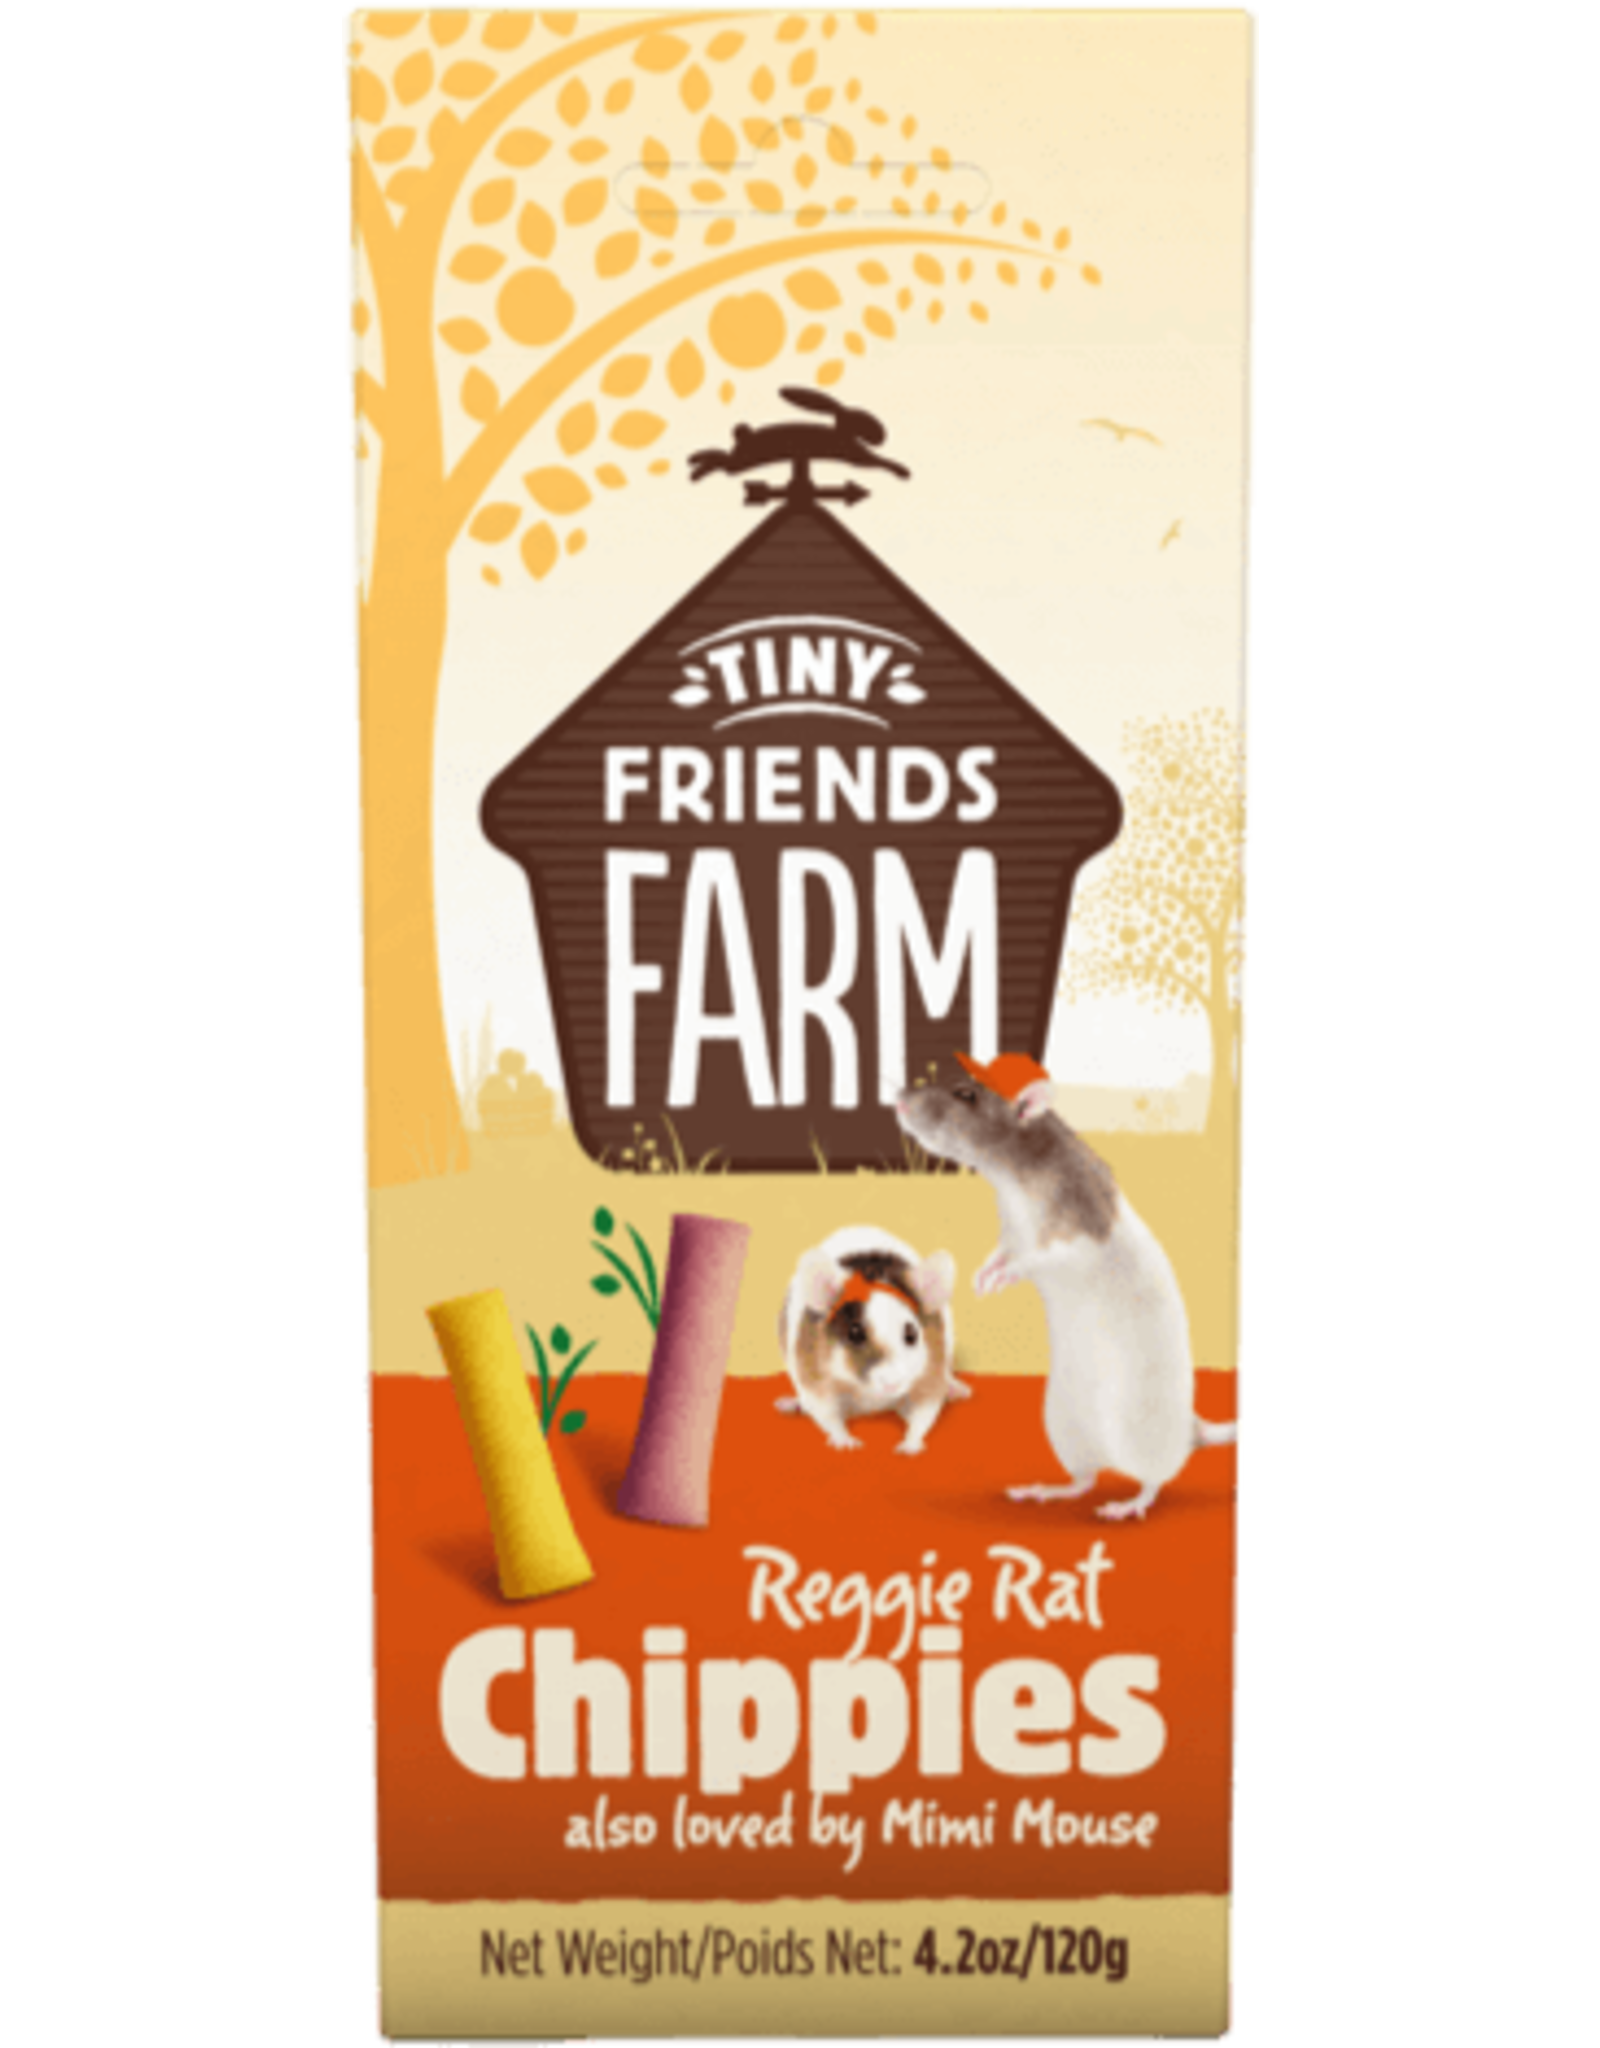 Supreme Pet Foods TINY FRIENDS FARM Reggie Rat & Mimi Mouse Chippies